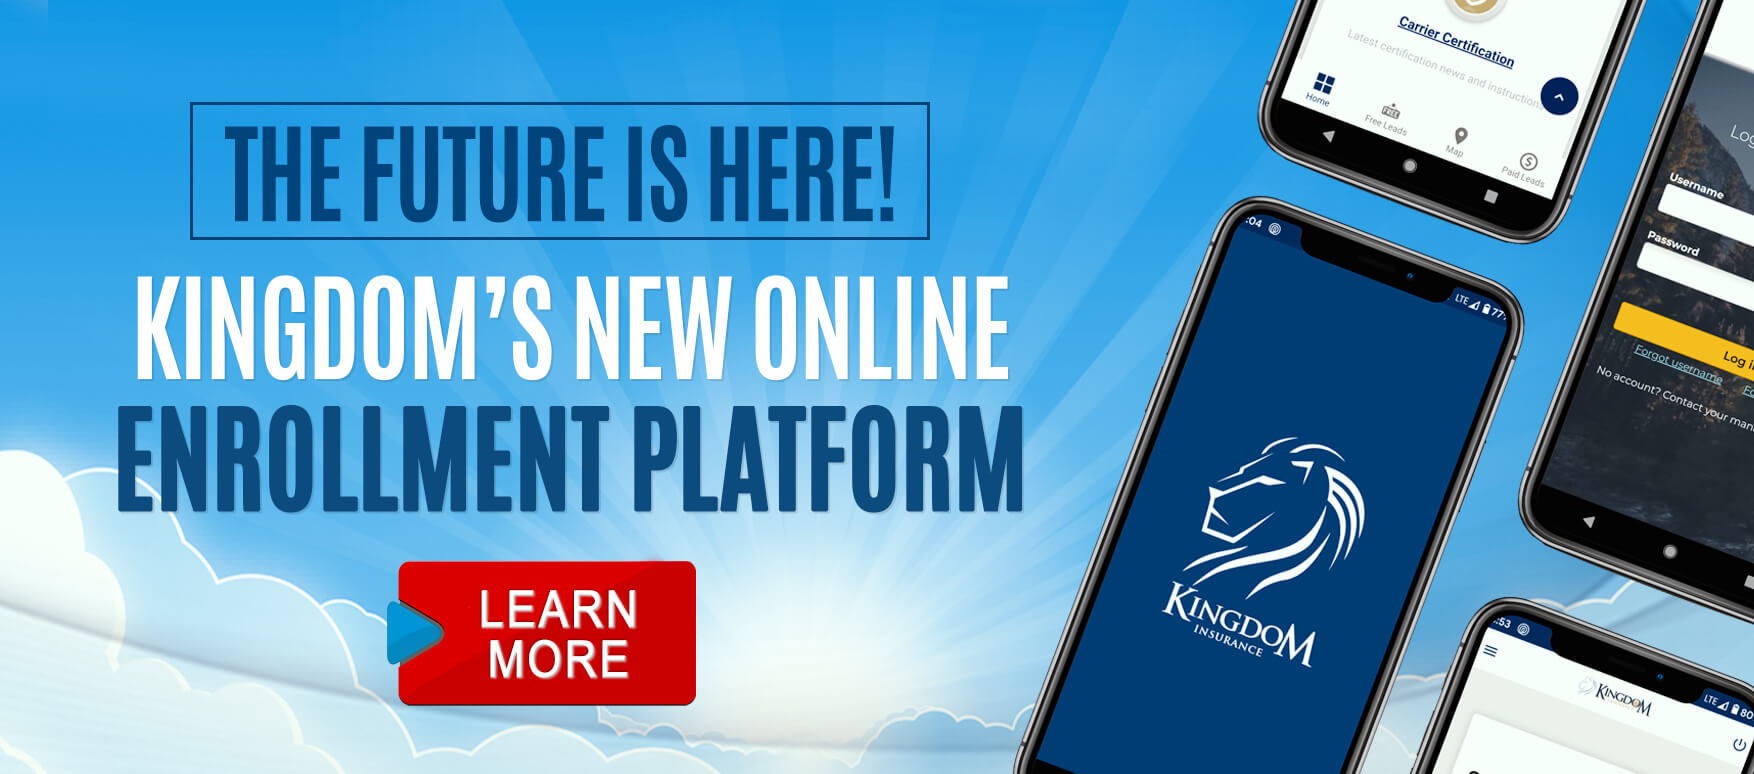 Sign up now for Kingdom's new enrollment platform!